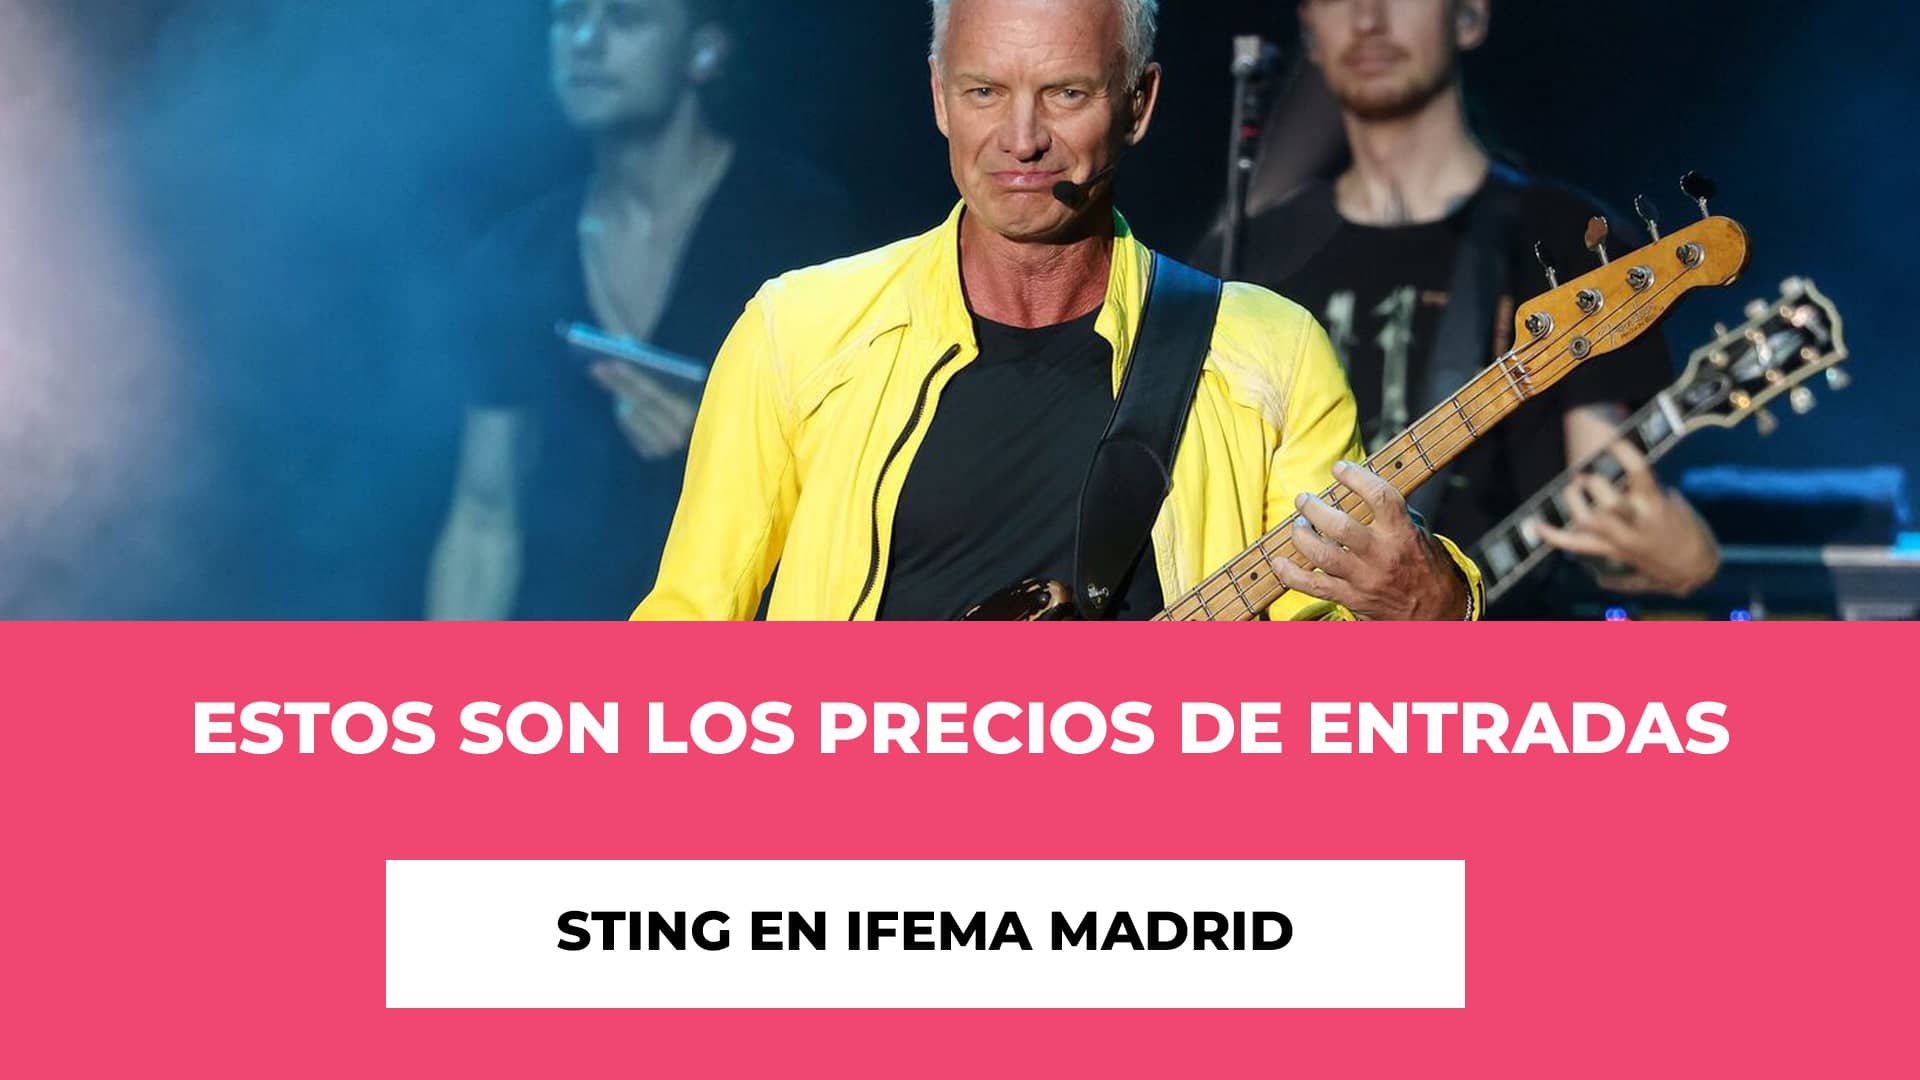 Estos son los precios de Entradas Sting en IFEMA Madrid - Hablamos de los diferentes tipos de tickets y sus precios